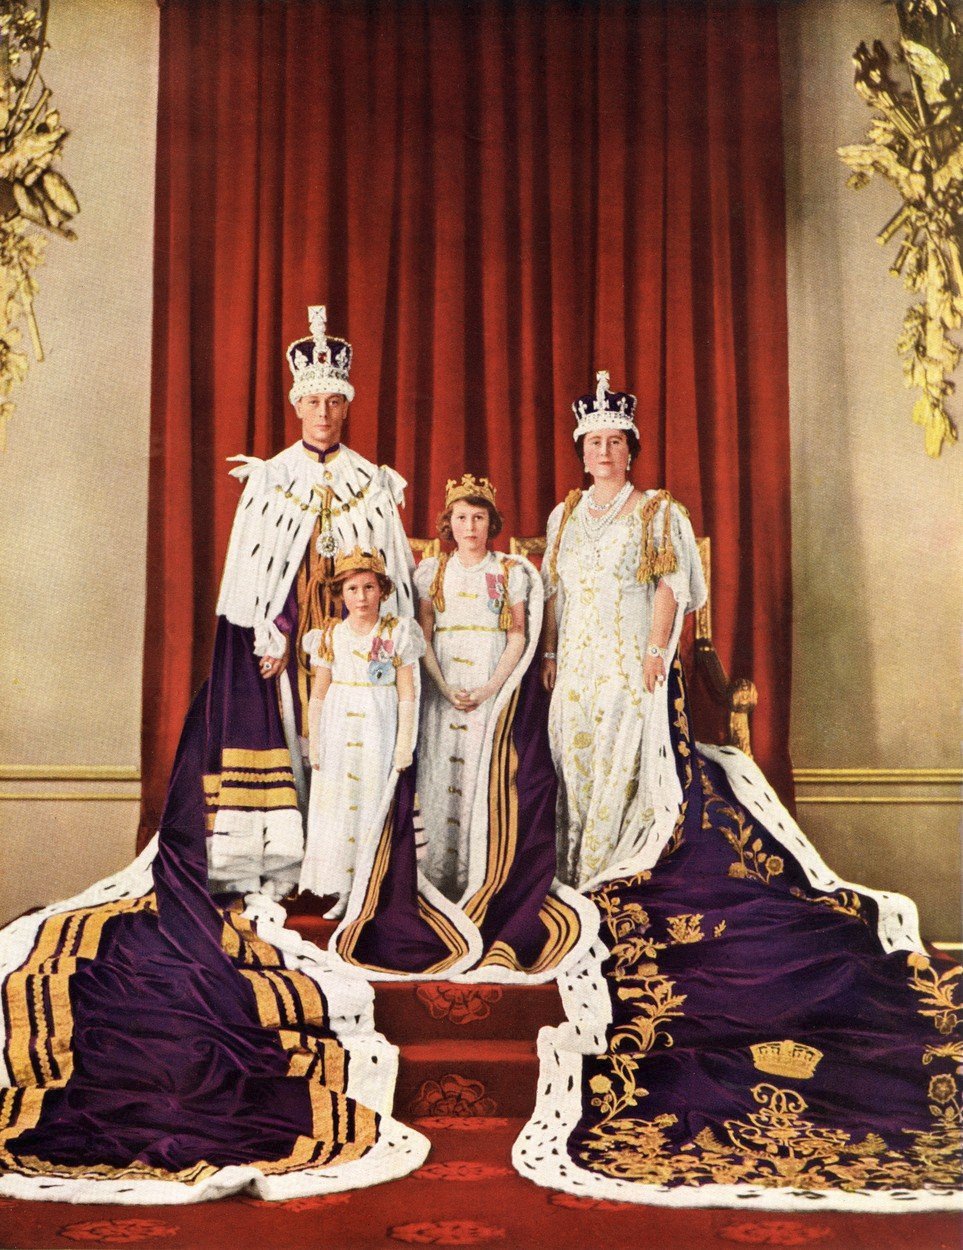 Rok 1937: Foto, které vzniklo k příležitosti korunovace krále Jiřího VI. (otce královny Alžběty). Na snímku je také královna Alžběta a tehdy ještě princezna Alžběta se sestrou princeznou Margaret. 